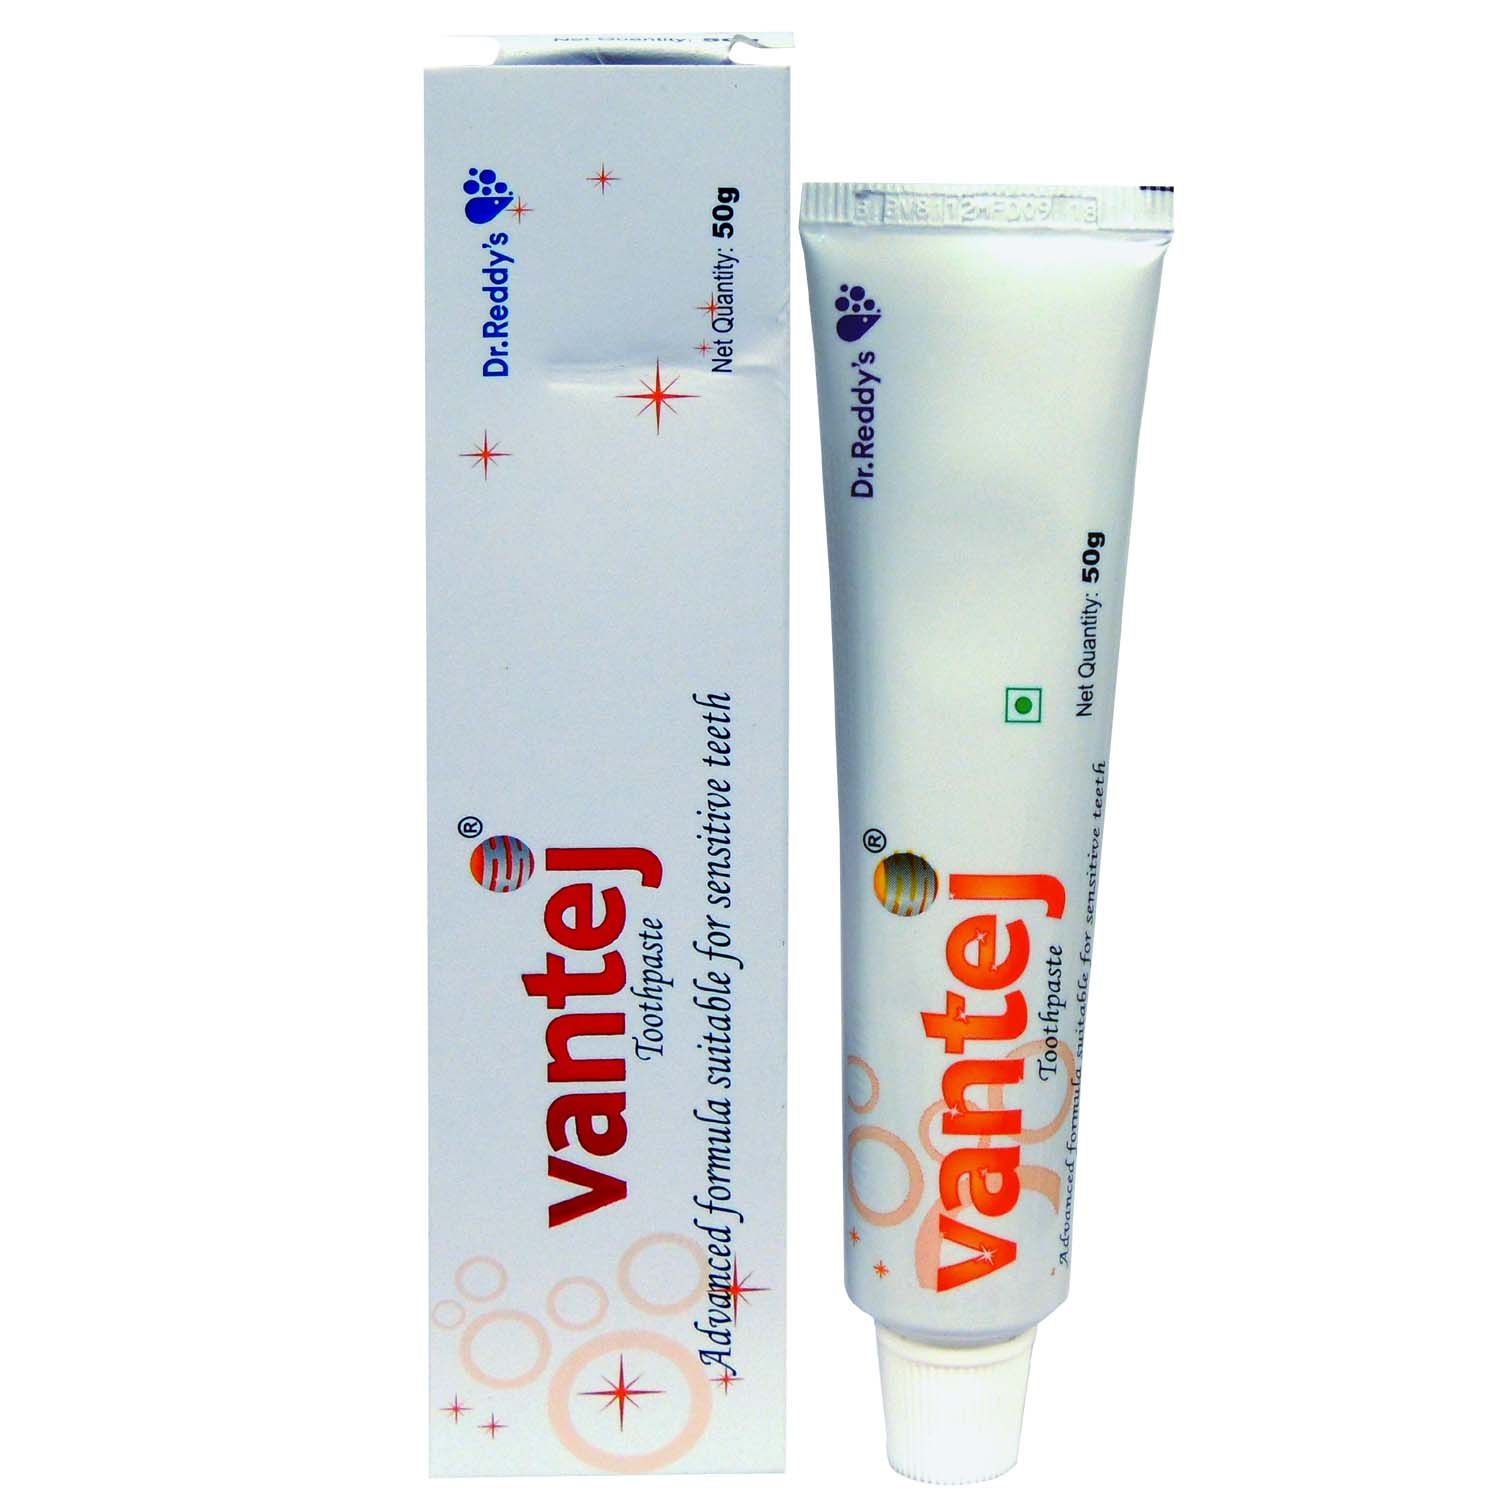 Vantej Toothpaste, 50 gm, Pack of 1 